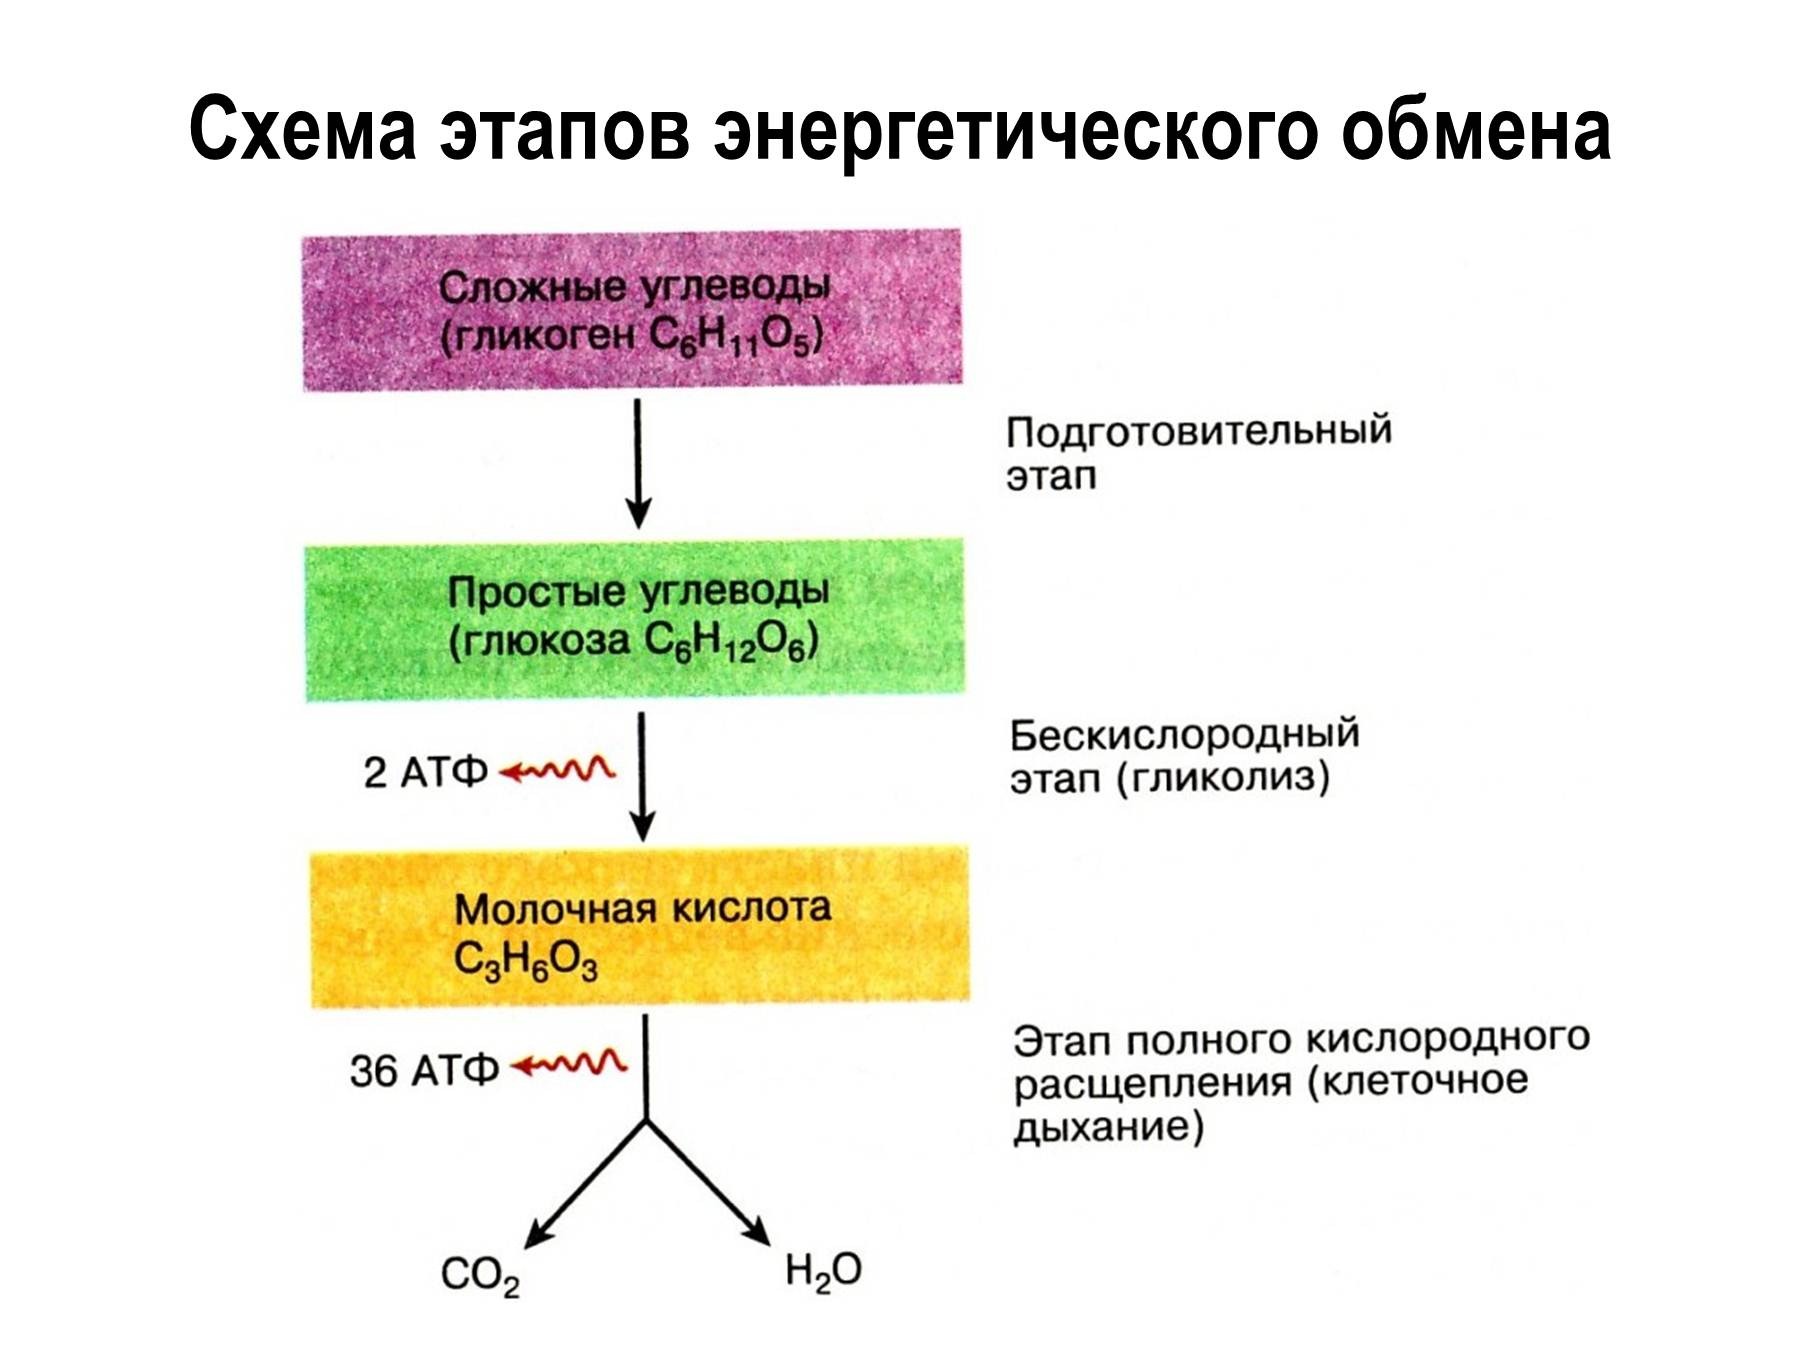 Анаэробное окисление атф. Этапы энергия обмена веществ схема. Охарактеризуйте этапы энергетического обмена..